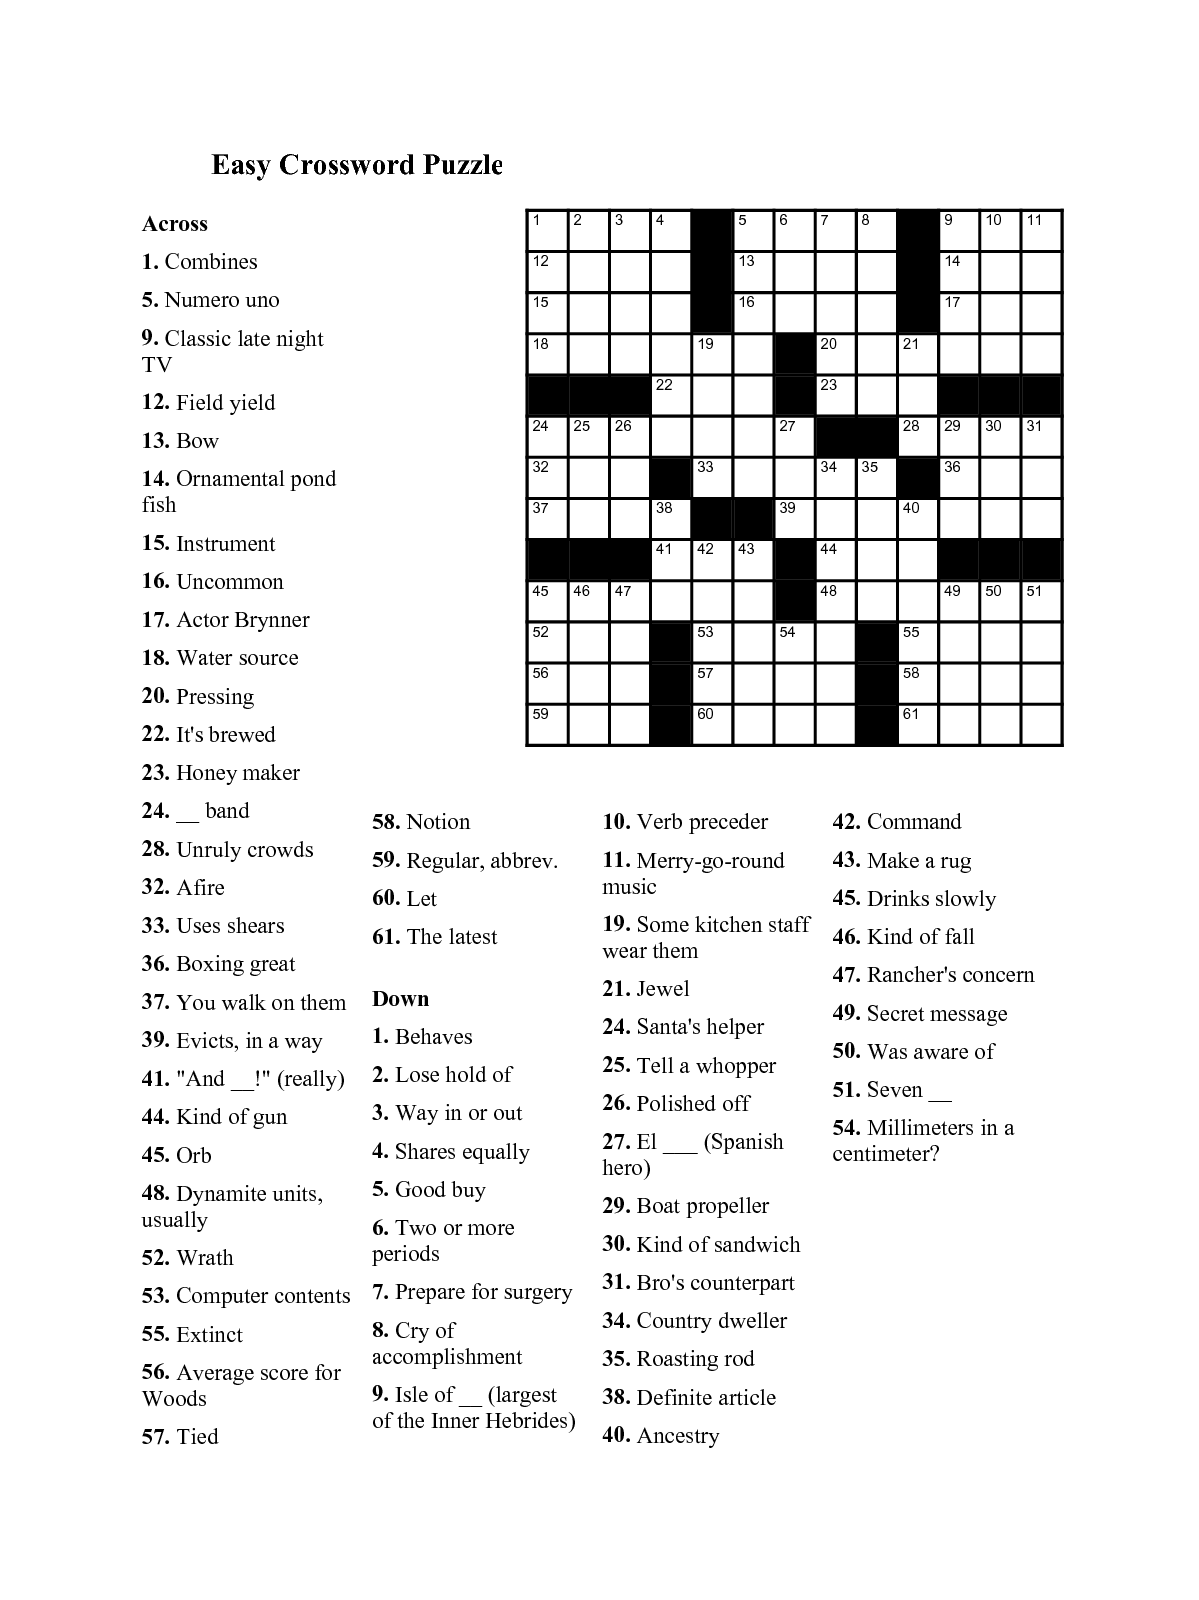 Easy Printable Crossword Puzzles - Easy Kids Crossword Puzzles | 101